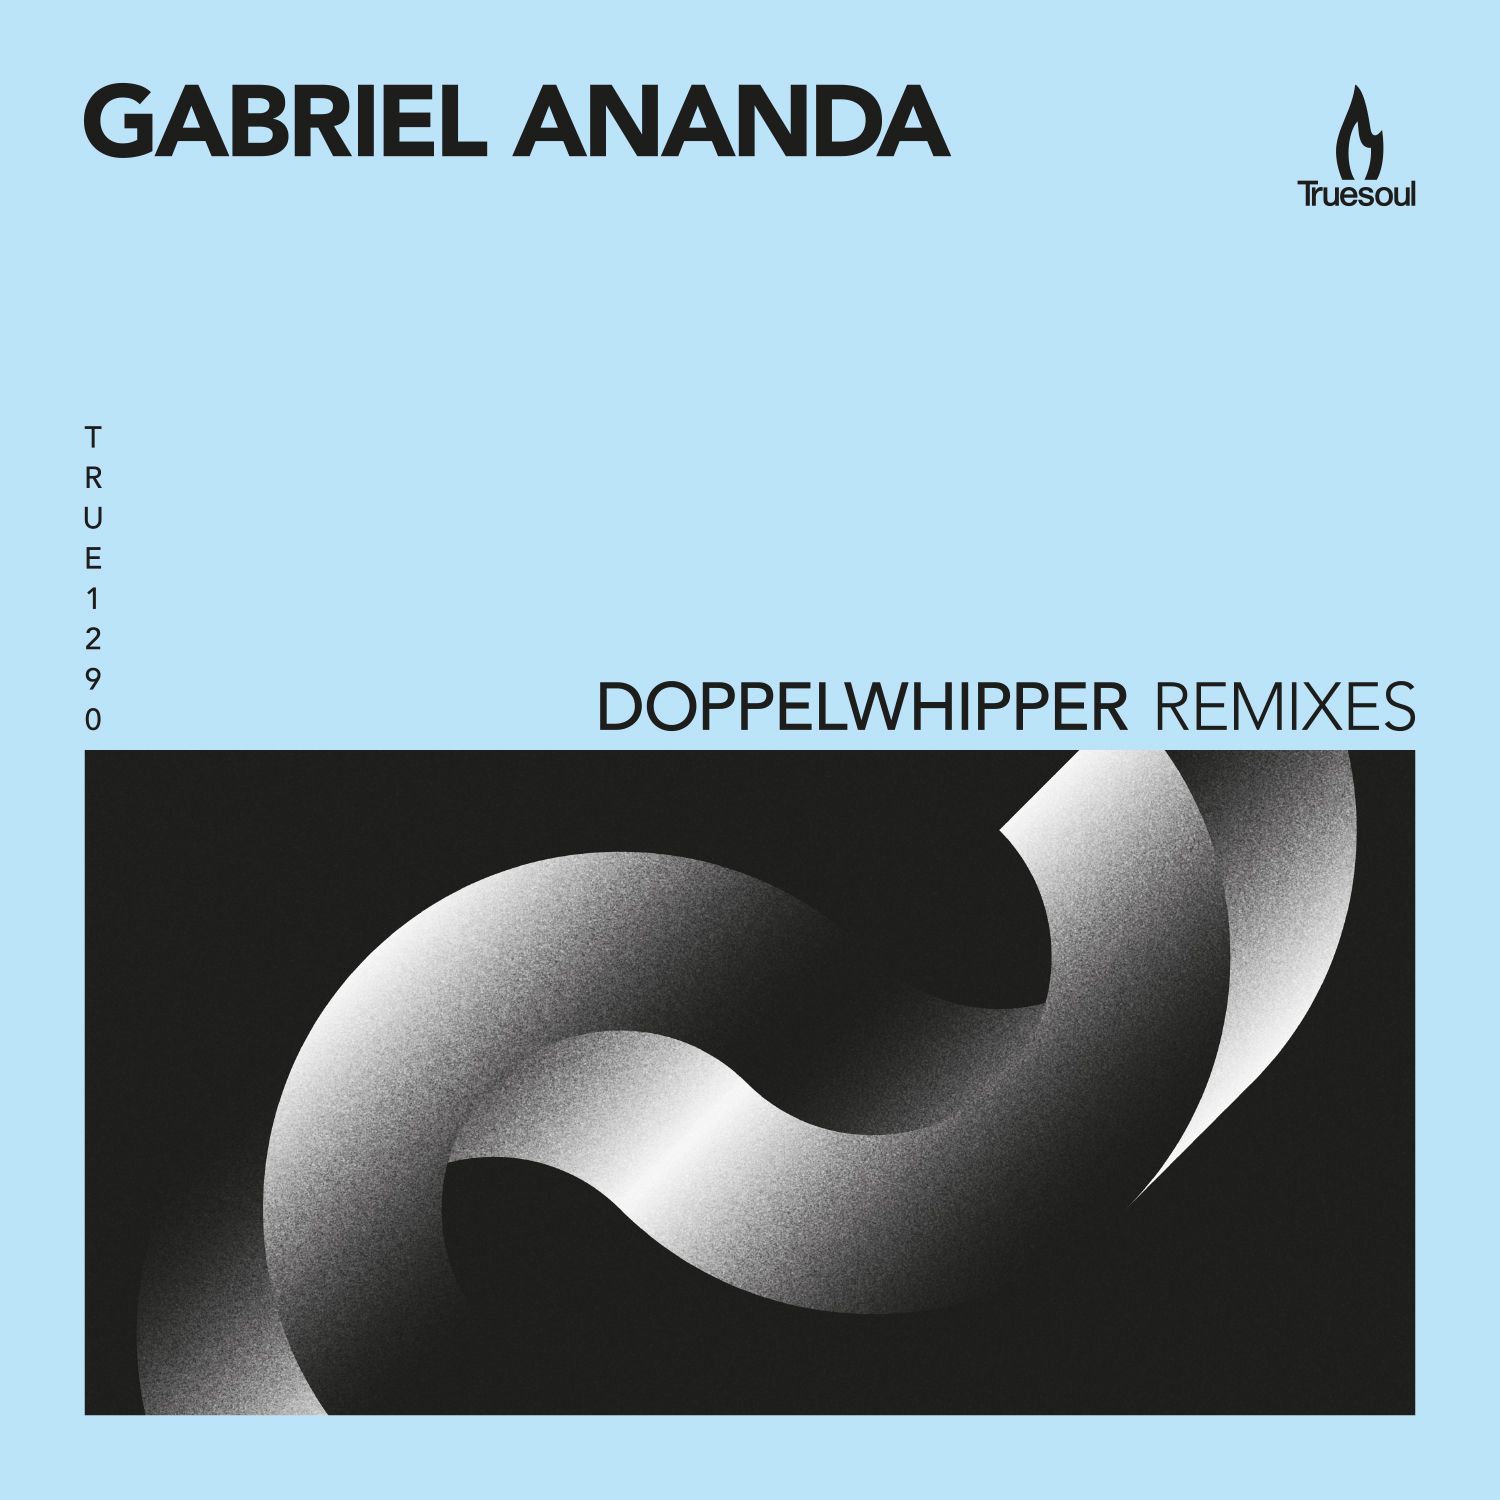 Lae alla Gabriel Ananda - Doppelwhipper (Marco Faraone Remix) - Truesoul - TRUE1290